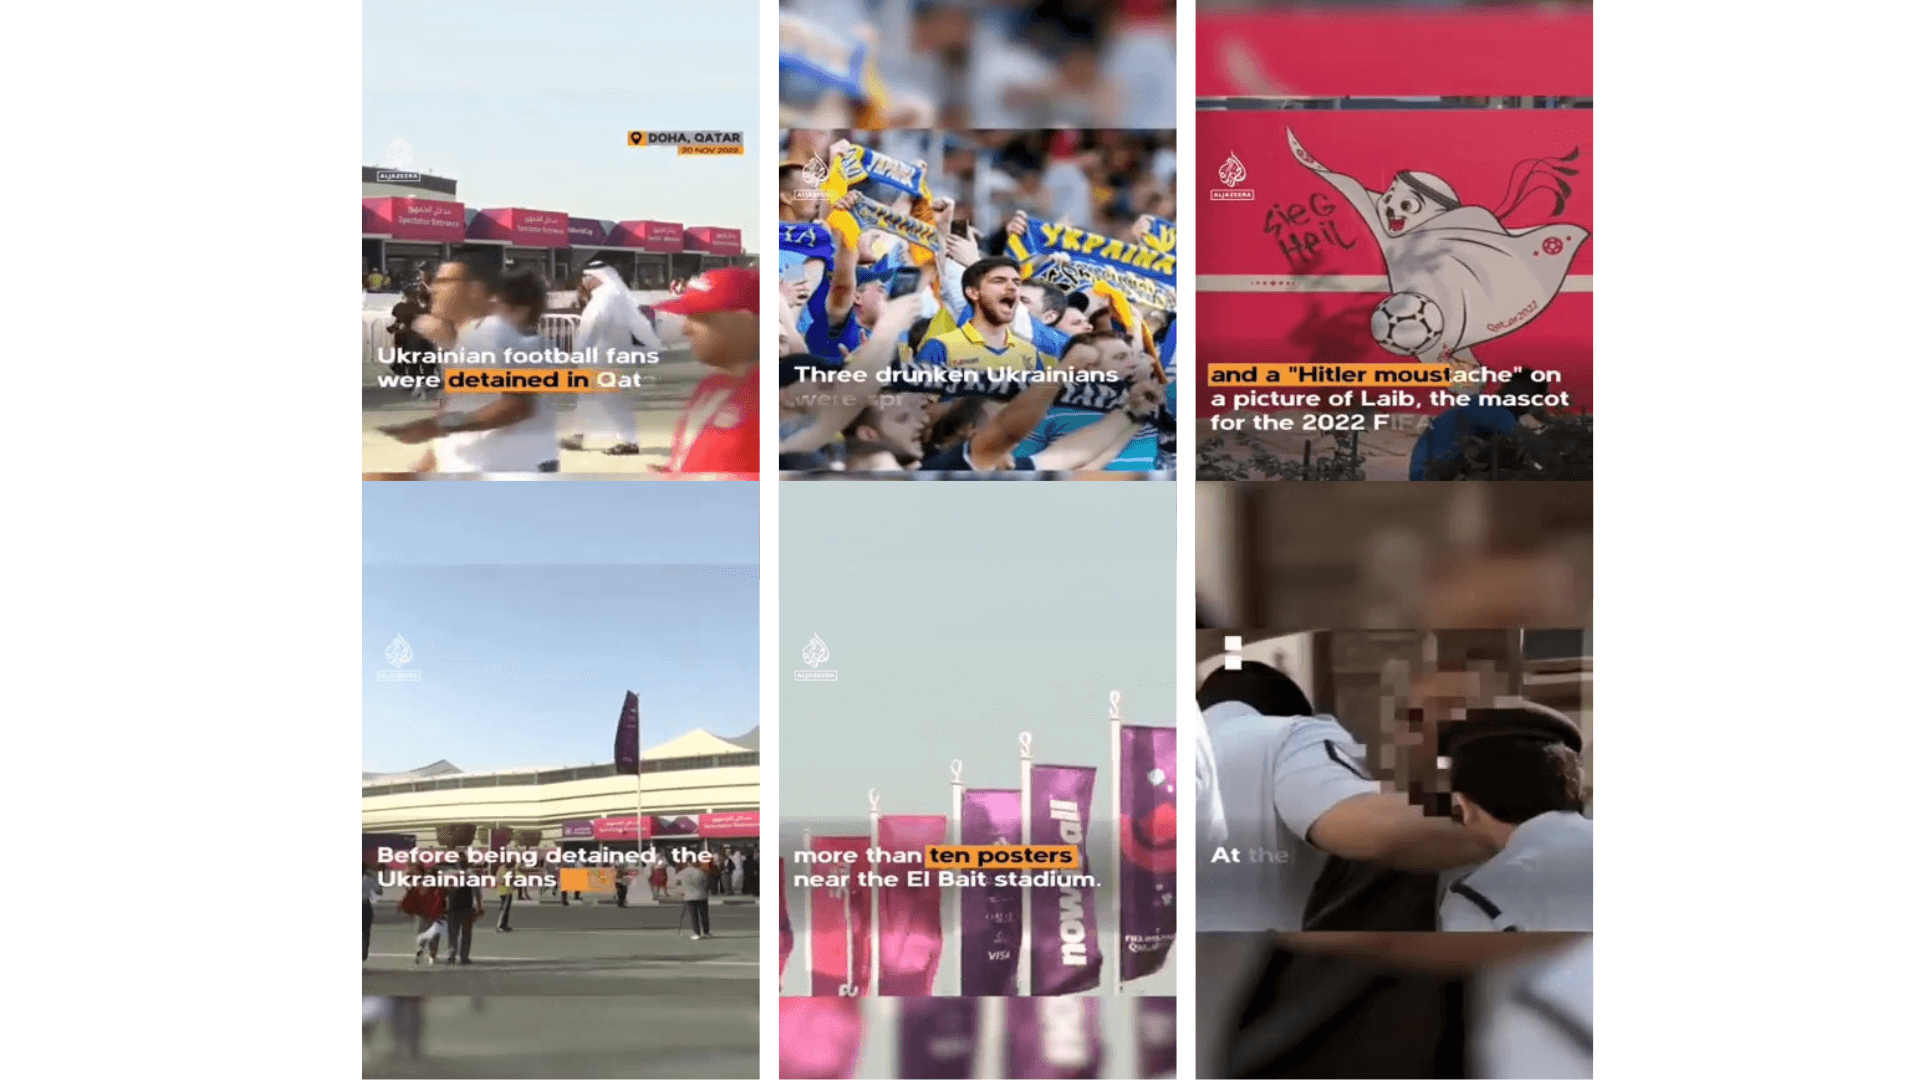 Abgesehen von der Einblendung des Al Jazeera-Logos am Ende des gefälschten Videos sind insgesamt sechs verschiedene Aufnahmen zu sehen